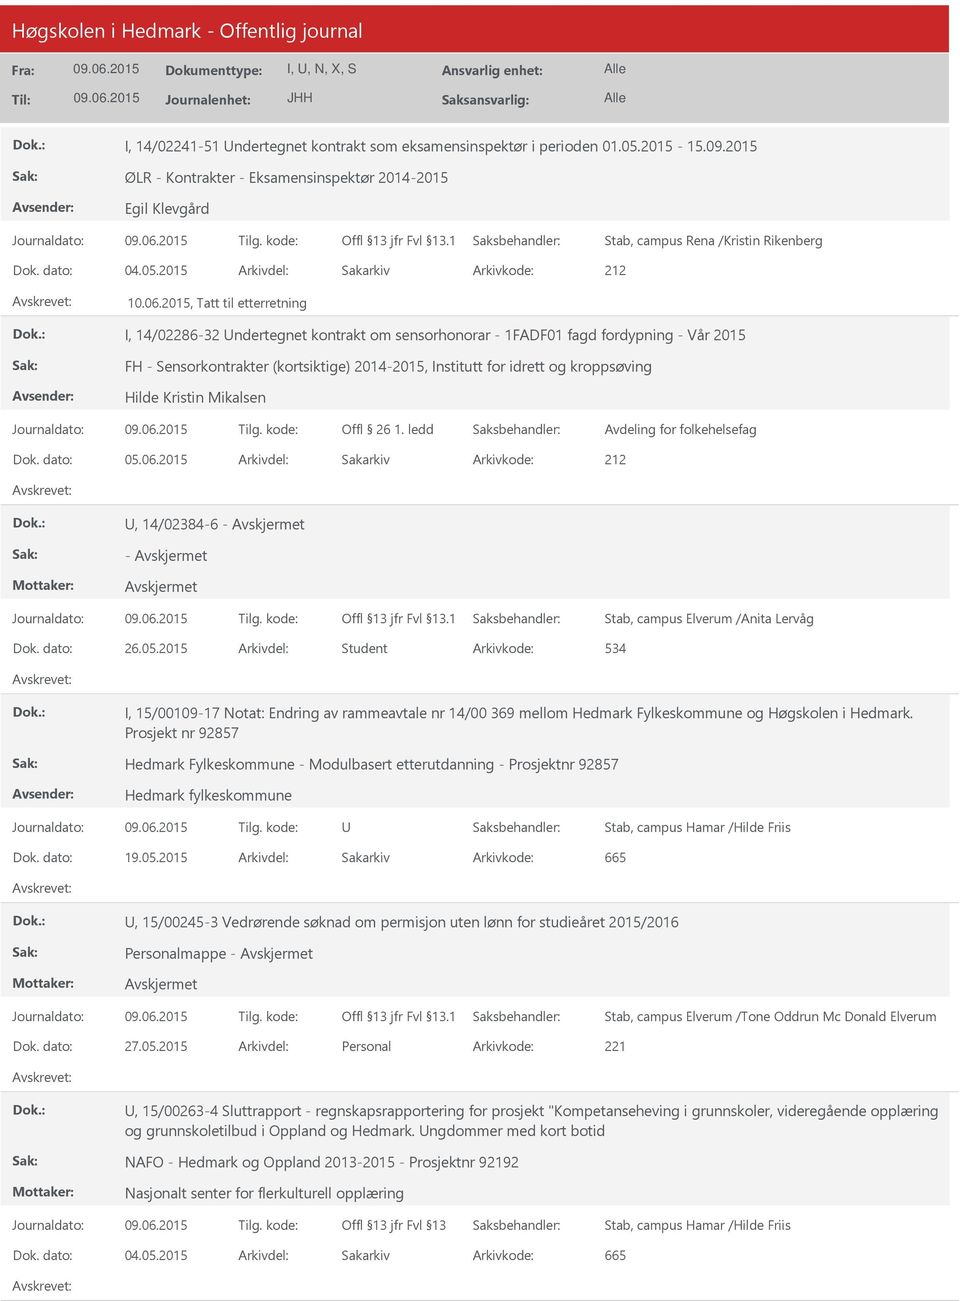 2015 Arkivdel: Sakarkiv I, 14/02286-32 ndertegnet kontrakt om sensorhonorar - 1FADF01 fagd fordypning - Vår 2015 FH - Sensorkontrakter (kortsiktige) 2014-2015, Institutt for idrett og kroppsøving